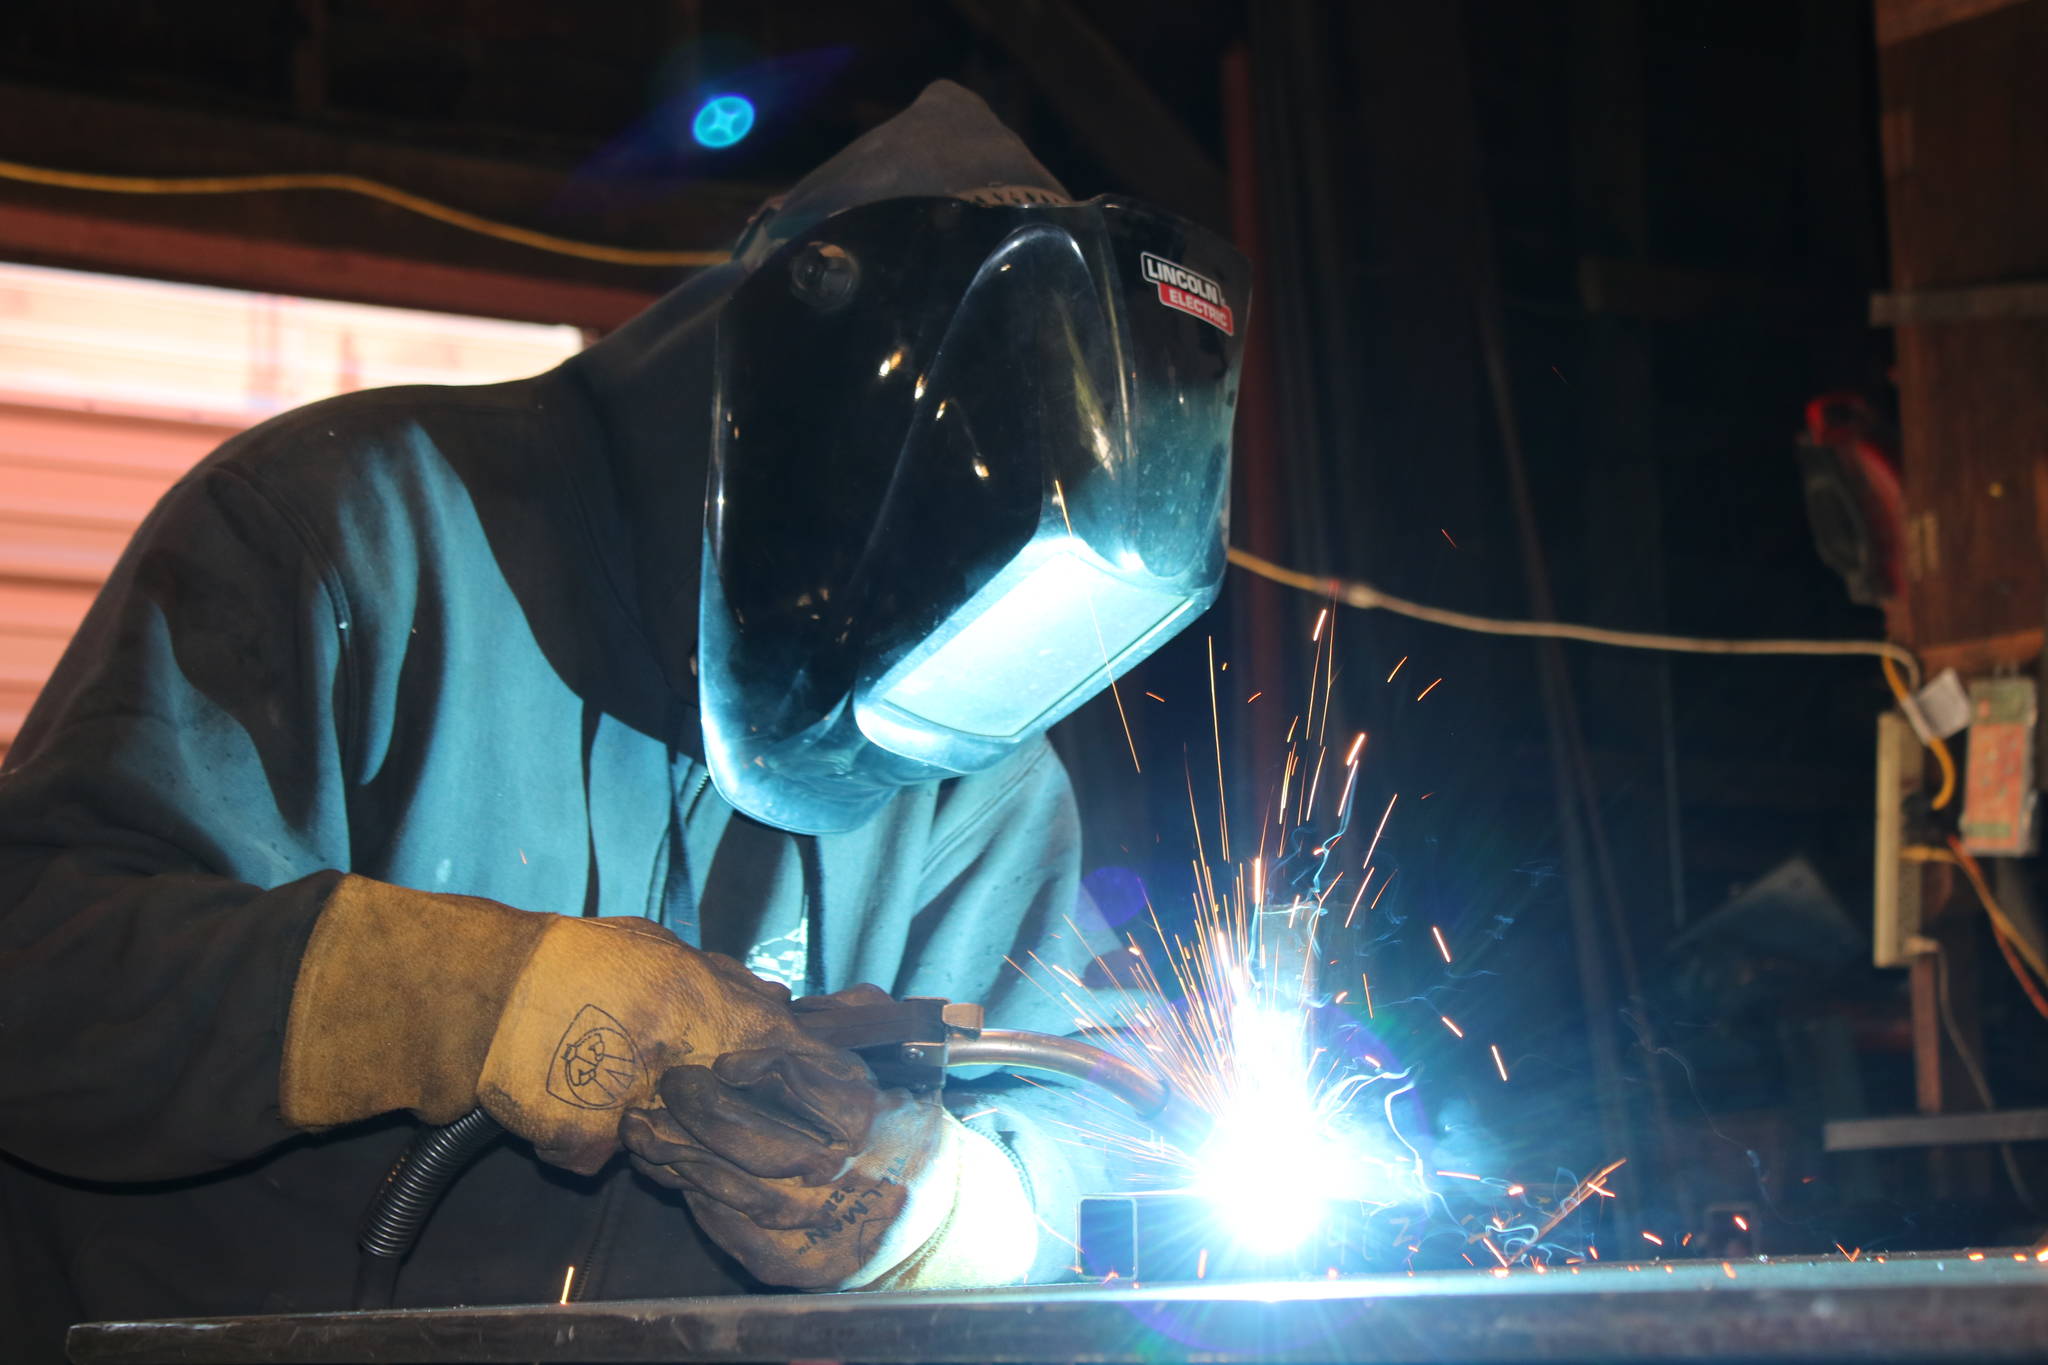 Morgan Scarboro welds at Ace Iron Works in Redmond. Aaron Kunkler/ Redmond Reporter